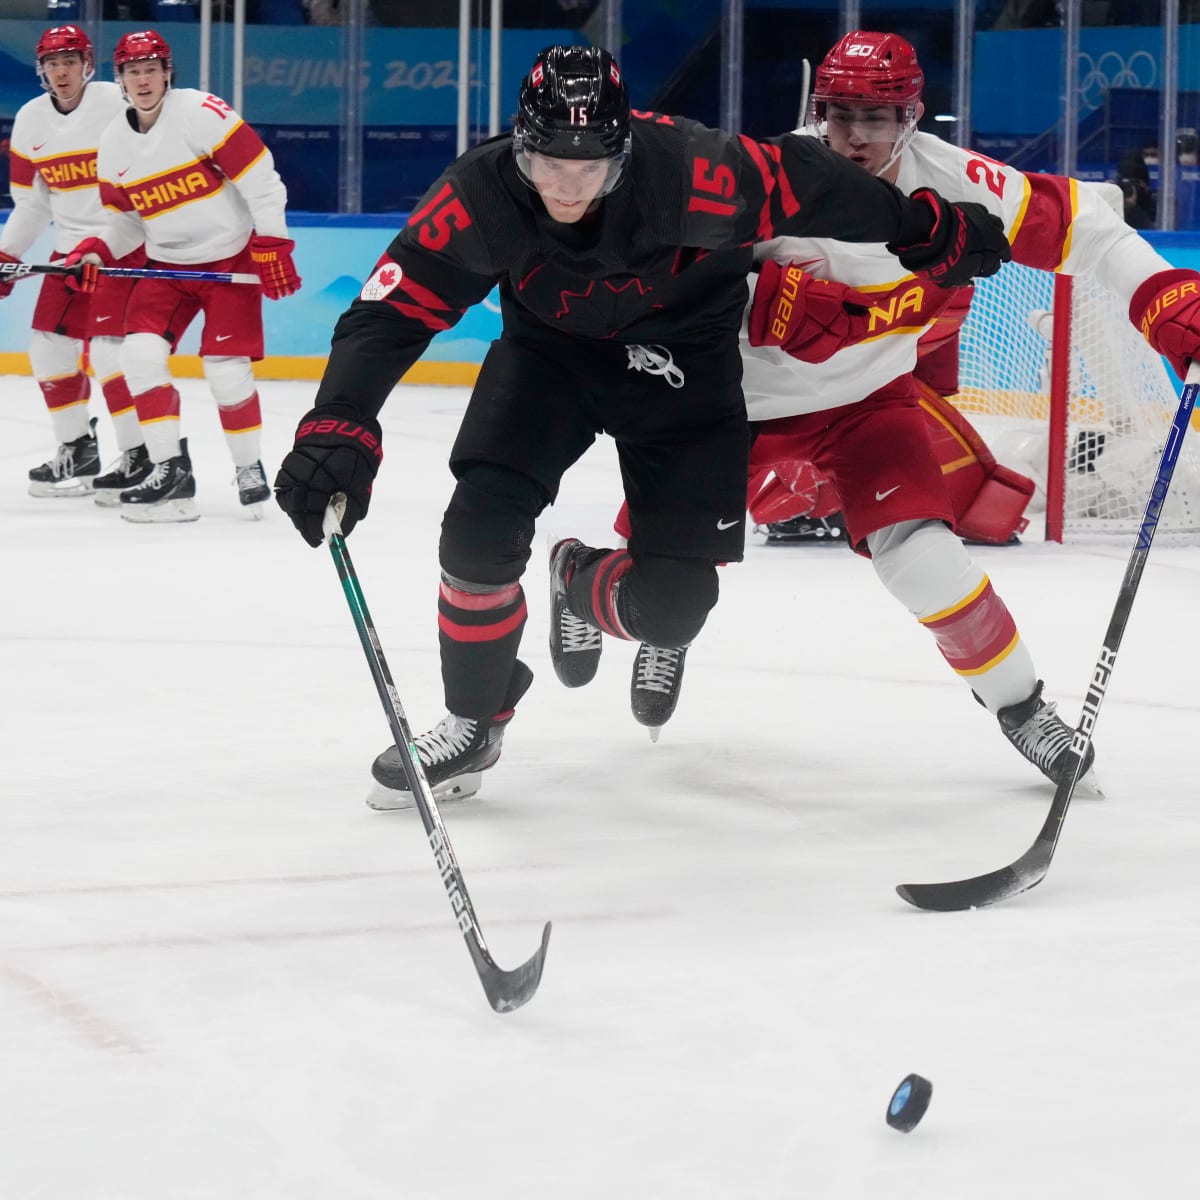 USA vs. Canada, 2018 Olympic women's hockey: Final score and recap